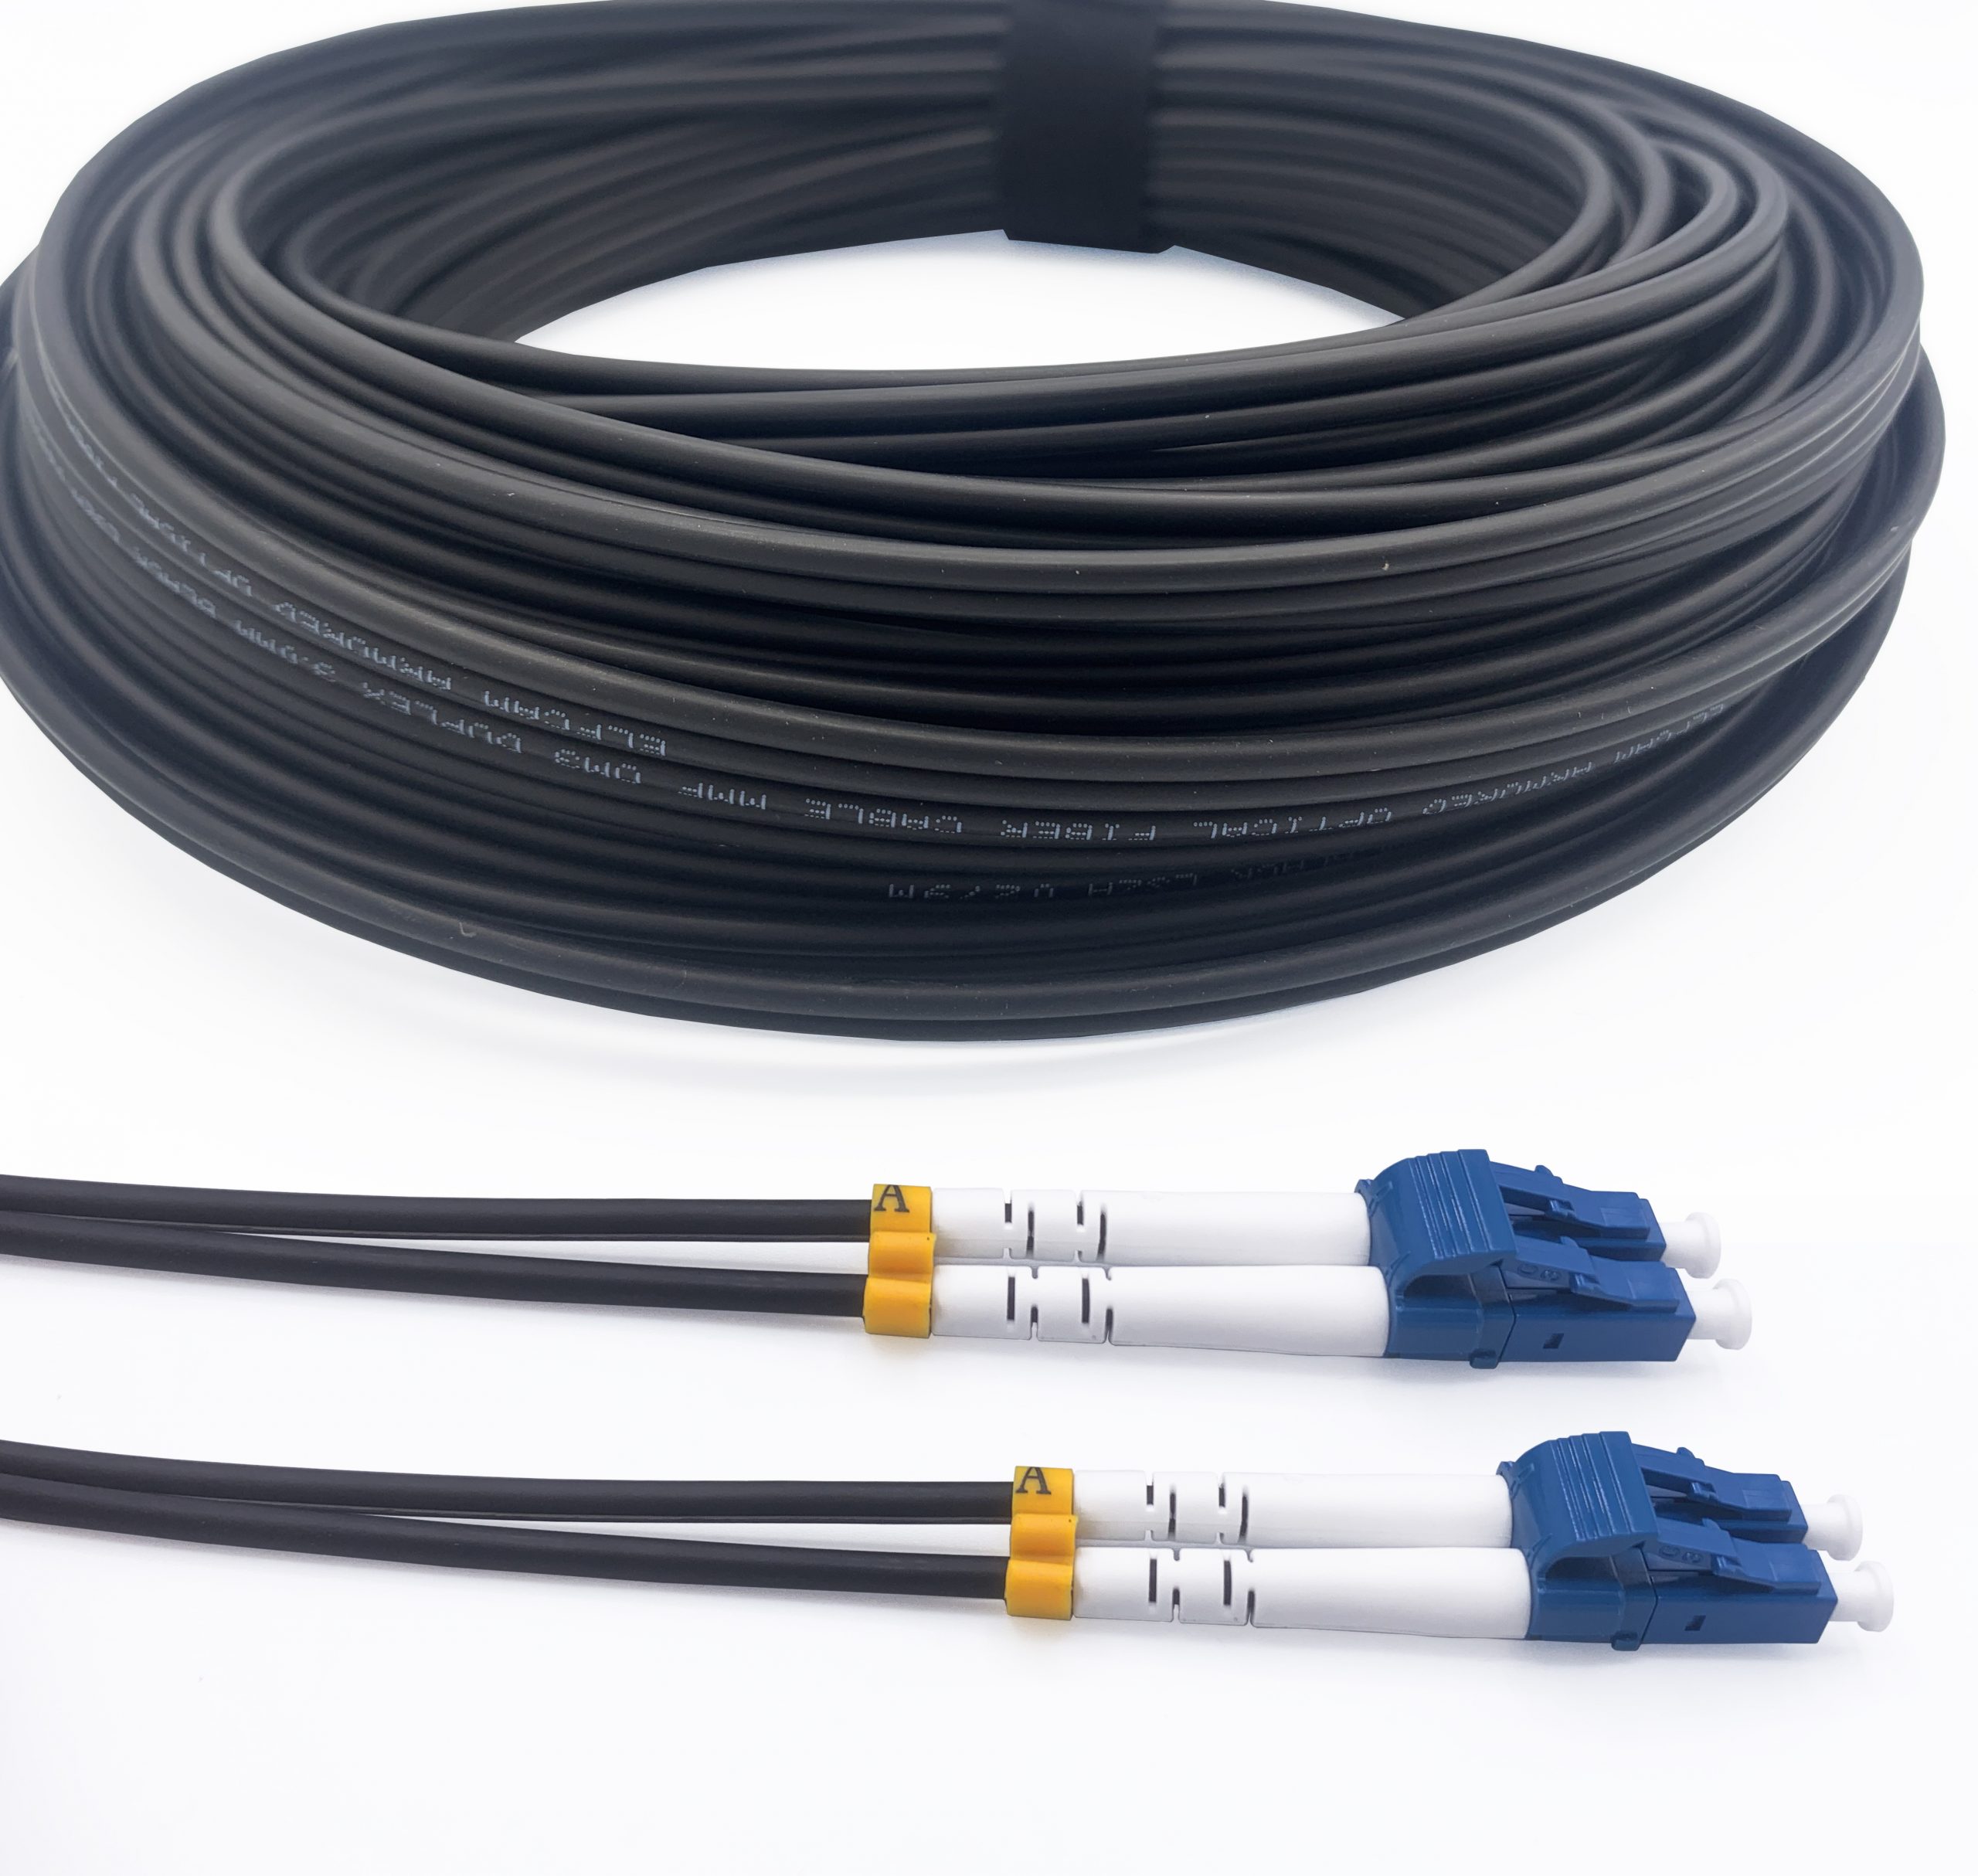 Comment bien choisir son câble pour la fibre optique ?